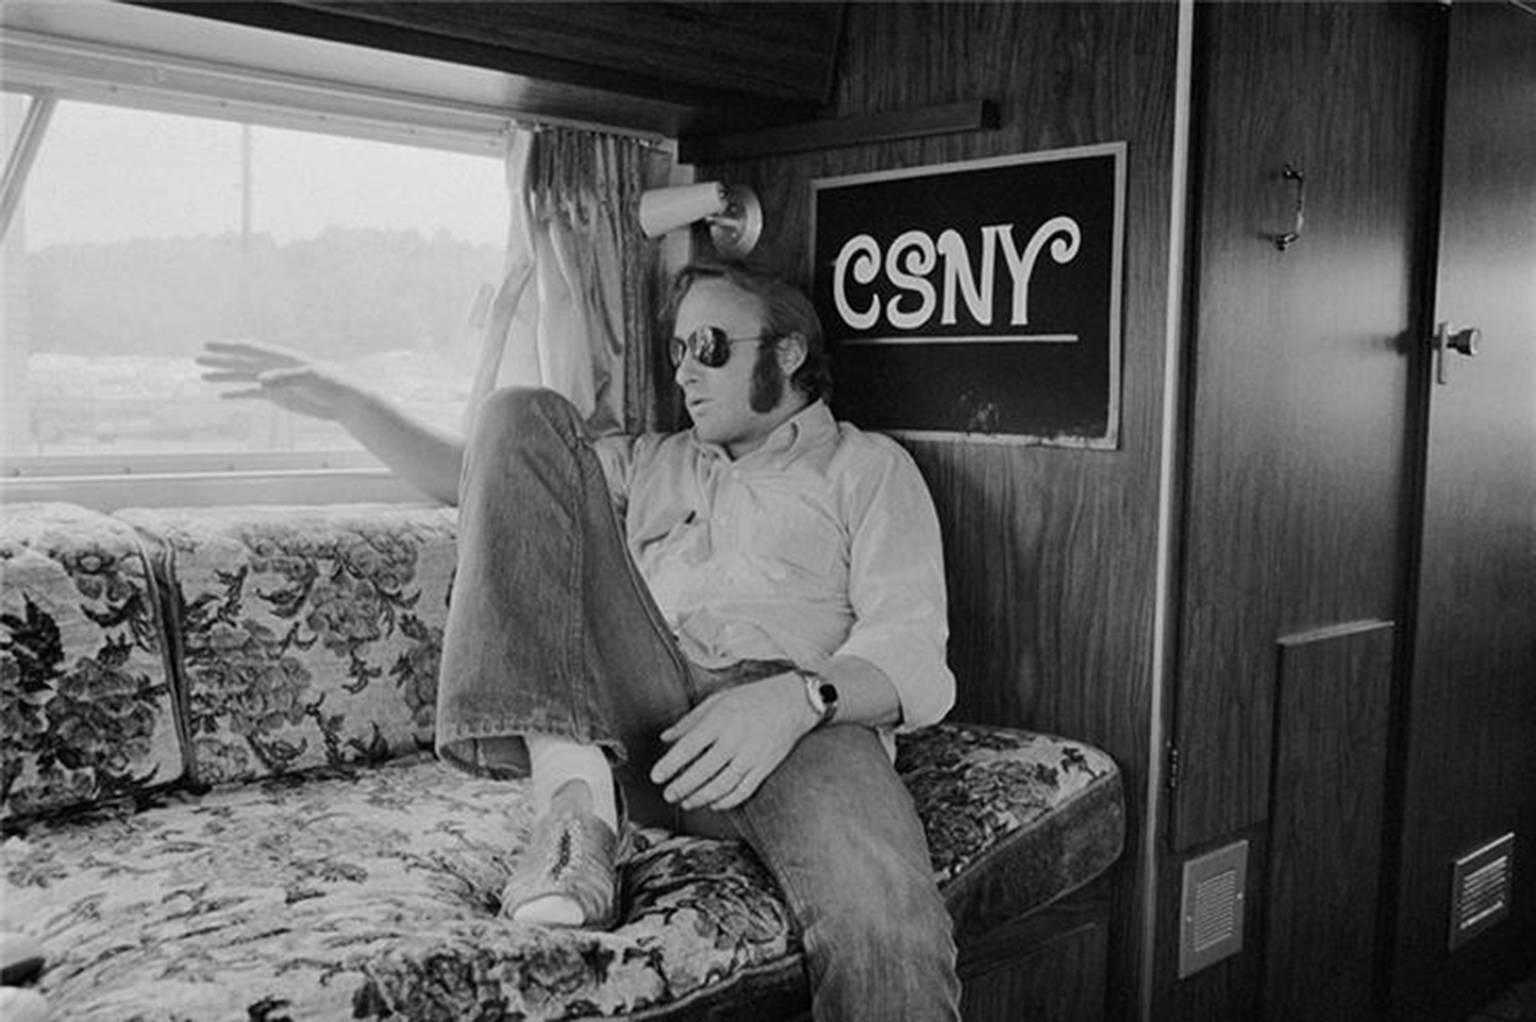 Joel Bernstein Black and White Photograph - Stephen Stills, Tour Bus, 1974